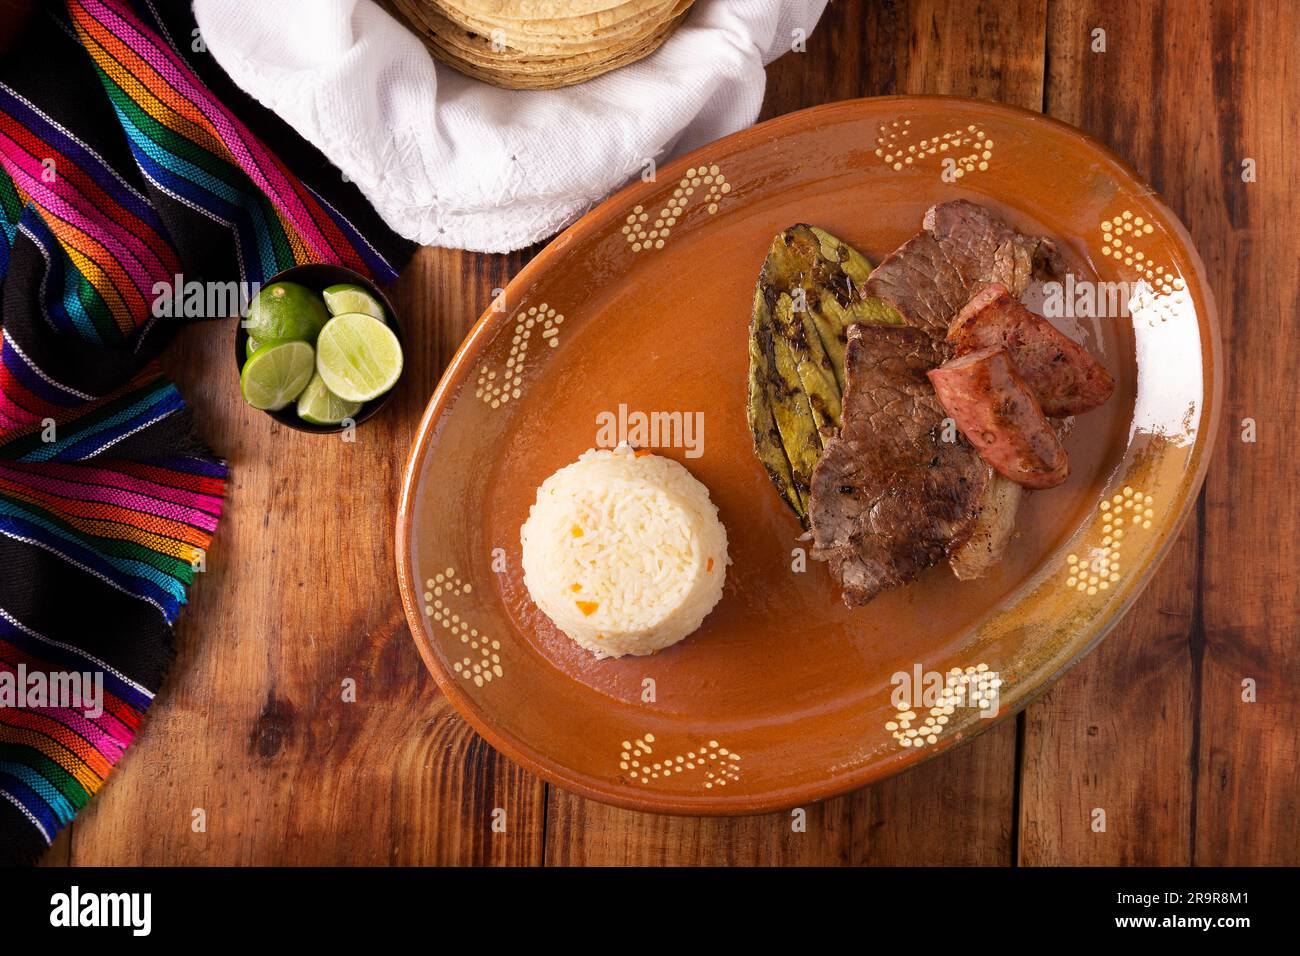 Viande rôtie avec cactus nopal rôtis et saucisse de porc appelée chorizo, accompagnée de riz blanc servi dans une assiette typiquement mexicaine en argile. Banque D'Images